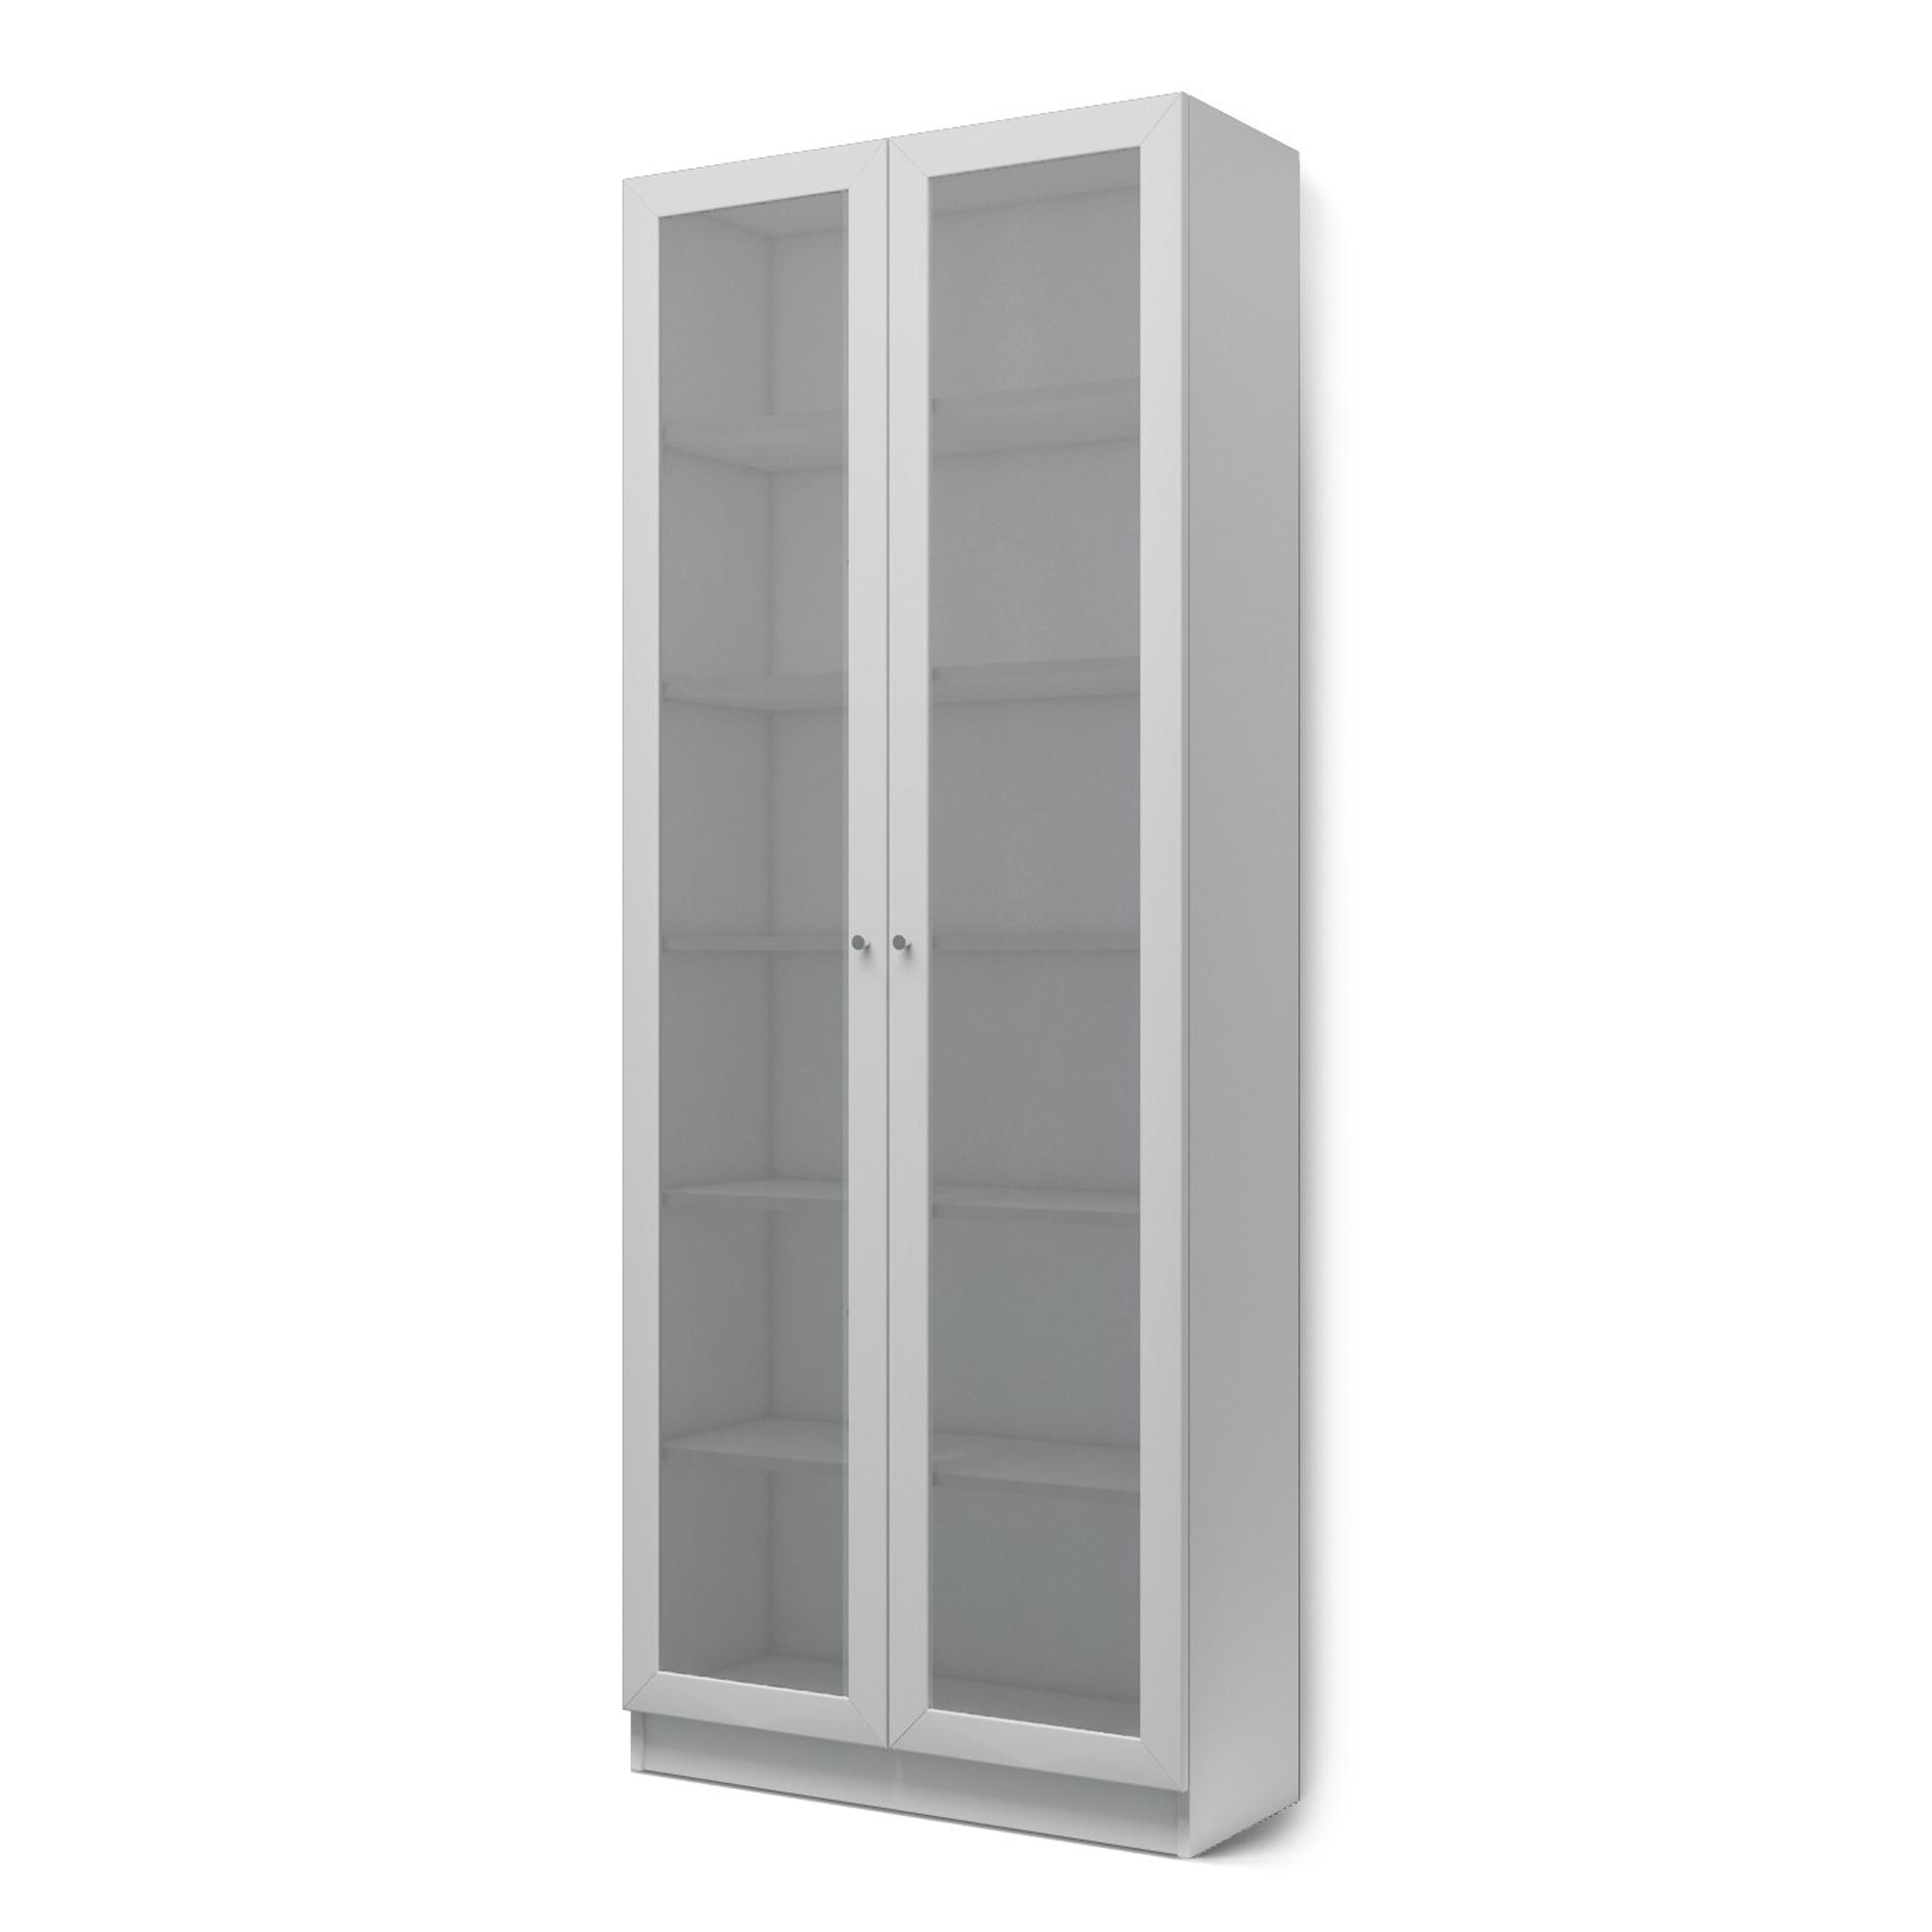  Книжный шкаф Билли 336 grey ИКЕА (IKEA) изображение товара